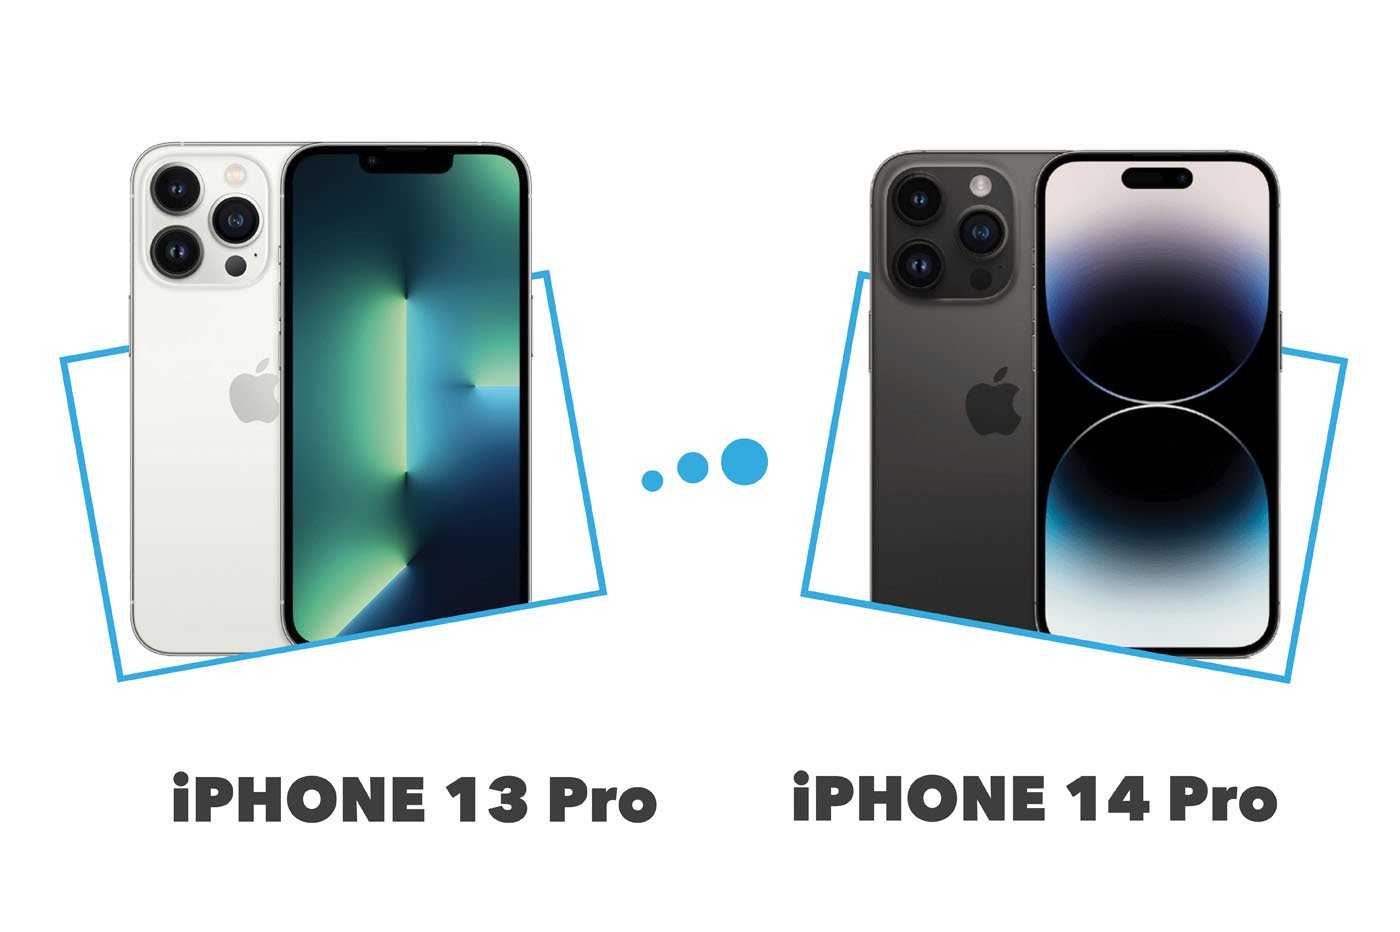 Meilleur prix iPhone 14 Pro : où l'acheter moins cher ?